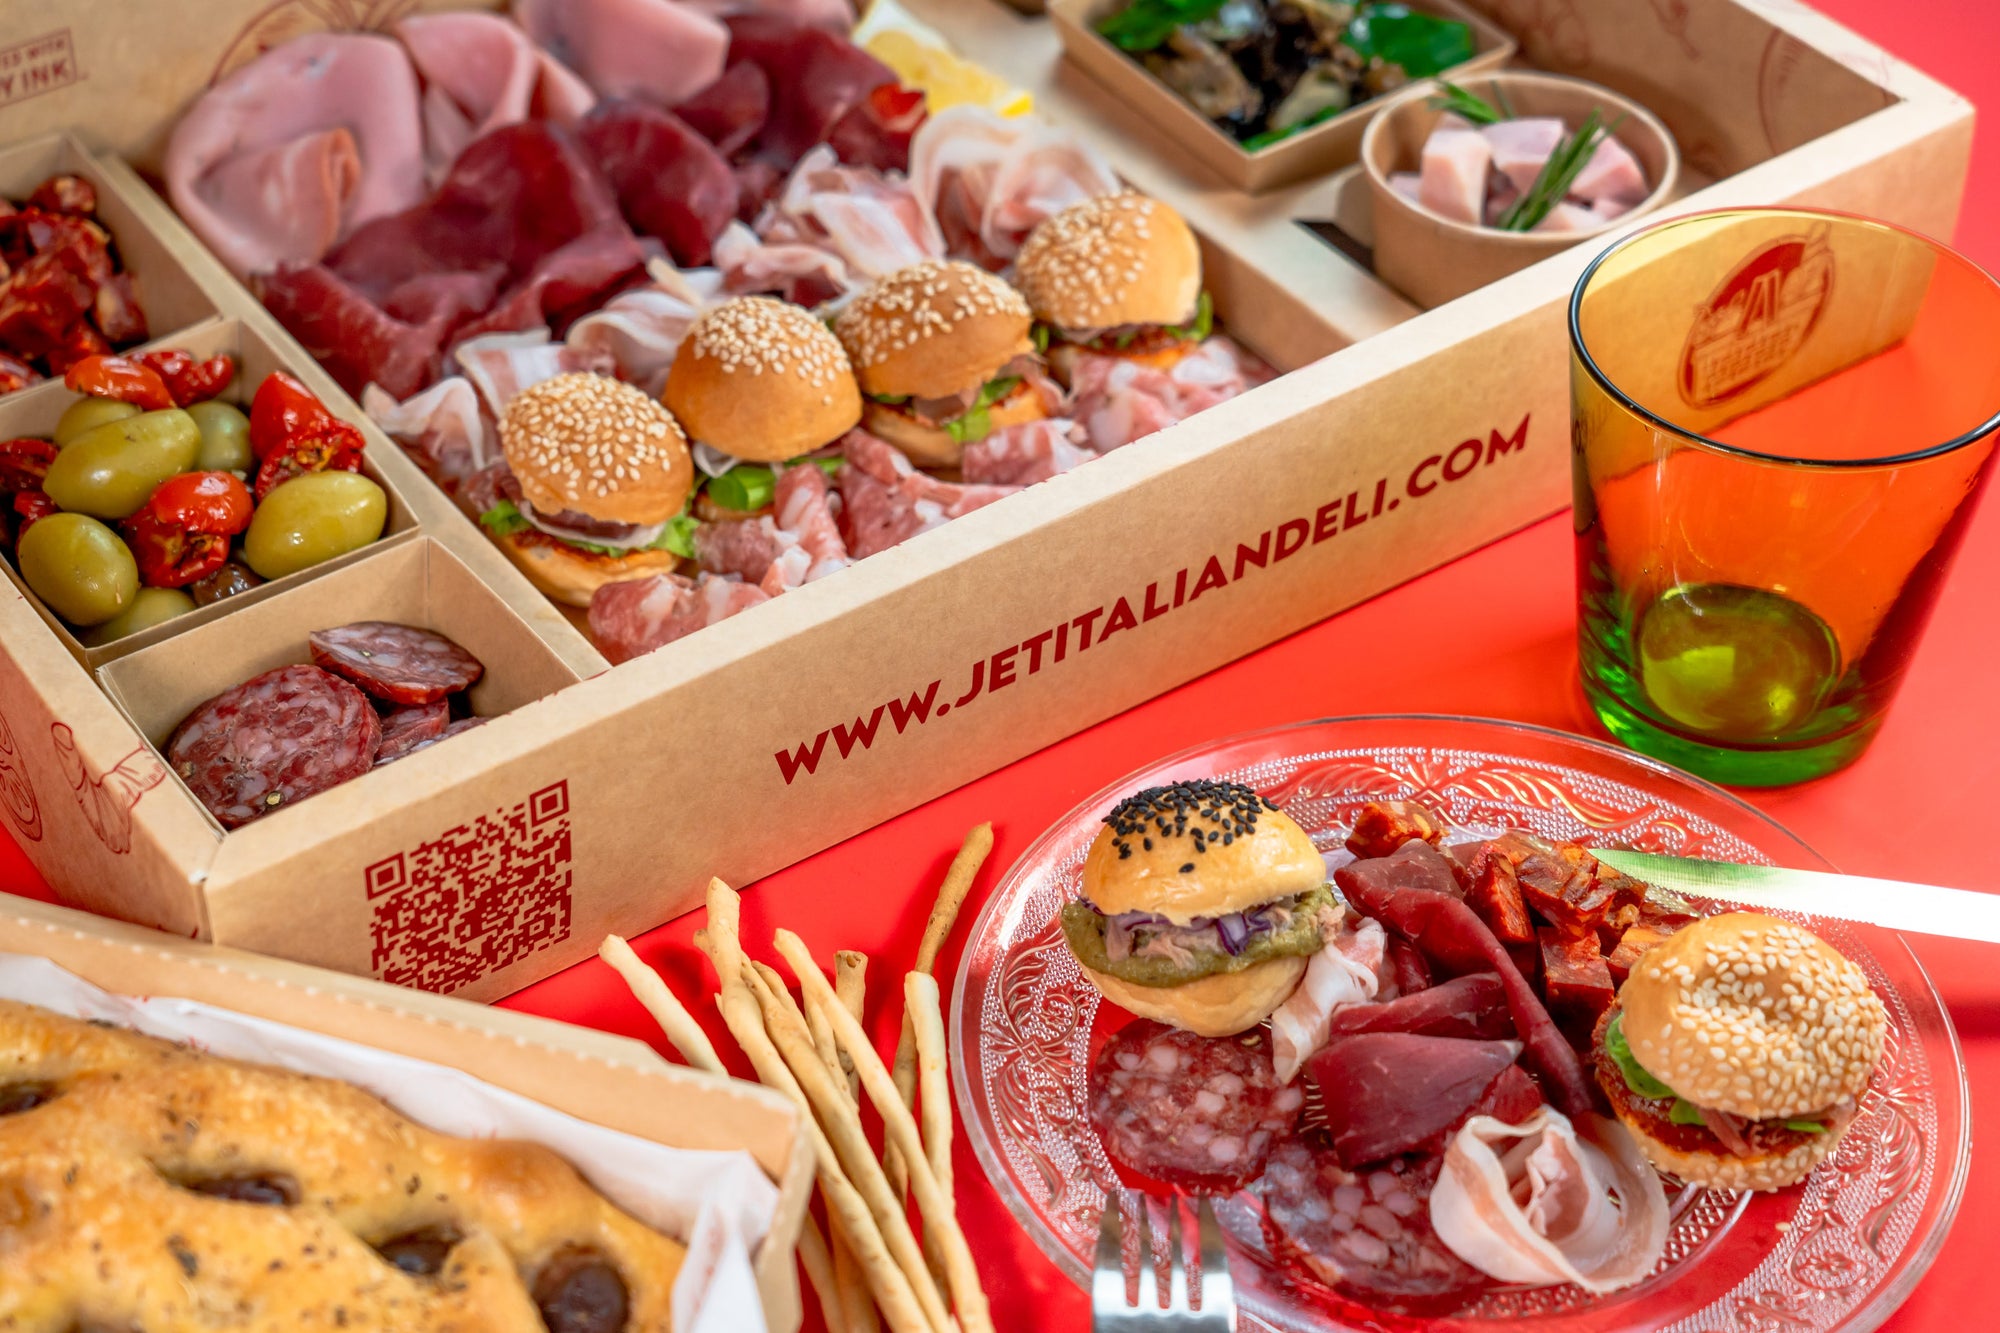 APERITIVO MIX - Classic8 - 249 THB per Person - Jet Italian Deli - JID-GA-BOX-READYTOEAT - Jet Italian Deli - Italian food - Italian grocery - Food delivery - Thailand - Wine - Truffle - Pasta - Cheese